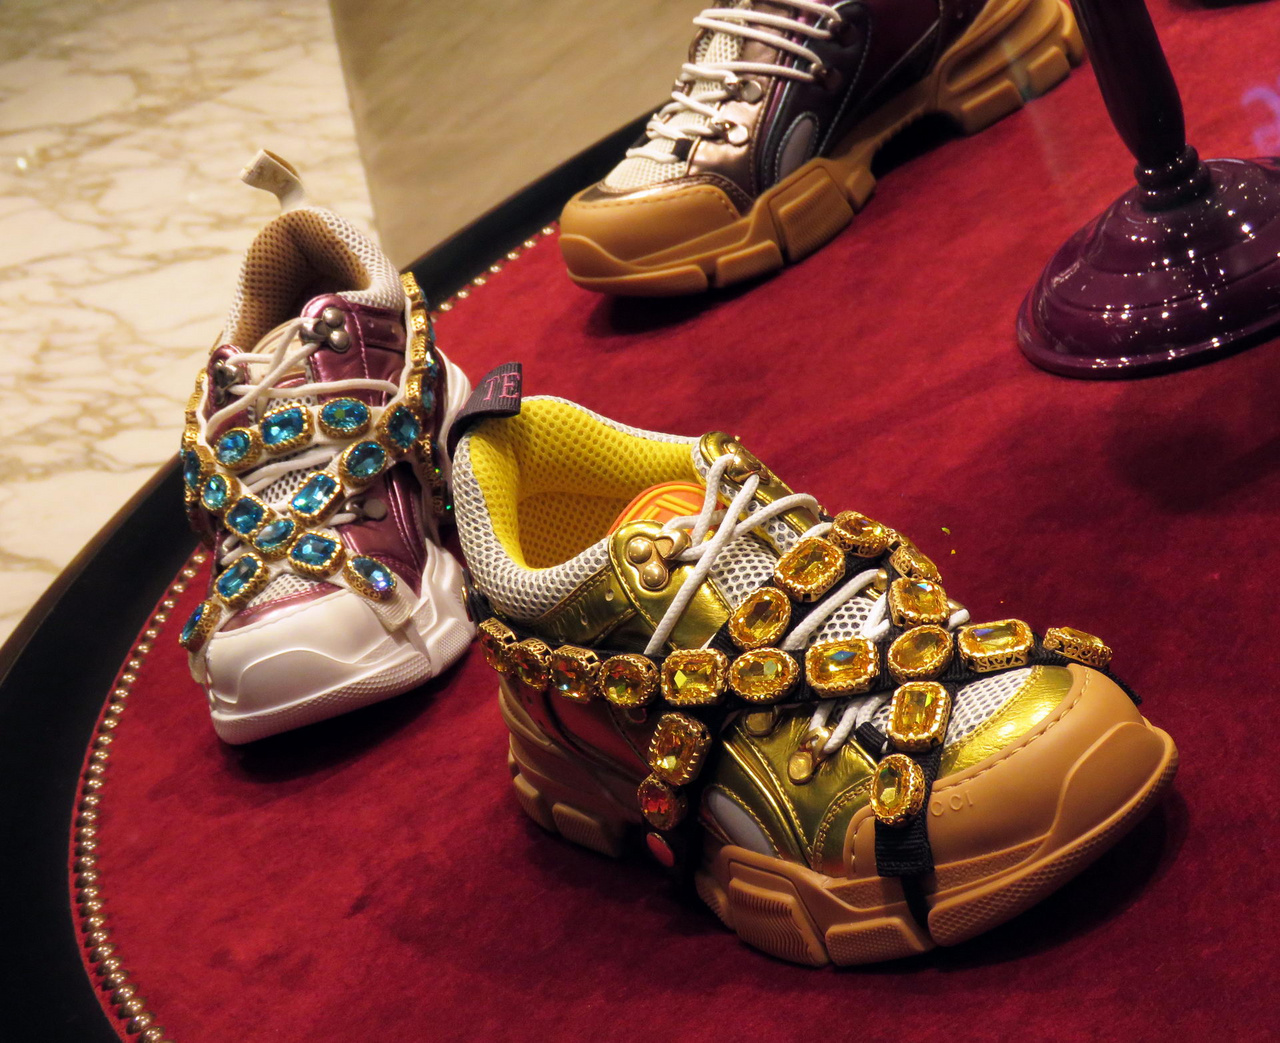 Jármű ez is, a lábnak. A jó túrázás alapja a megfelelő cipő – szerencsére találtunk ilyeneket a Dubai Mall egyik üzletében. Ez aztán kiragyog a sivatag homokjából, megtörvén annak egyhangúságát!